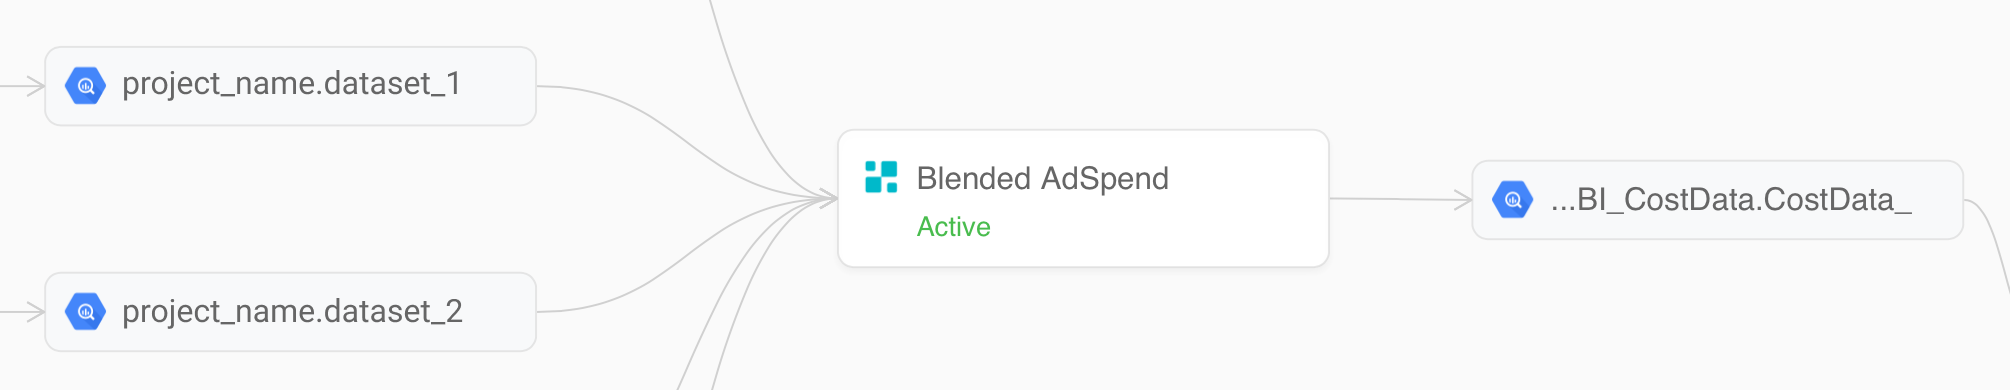 Blended AdSpend transformation